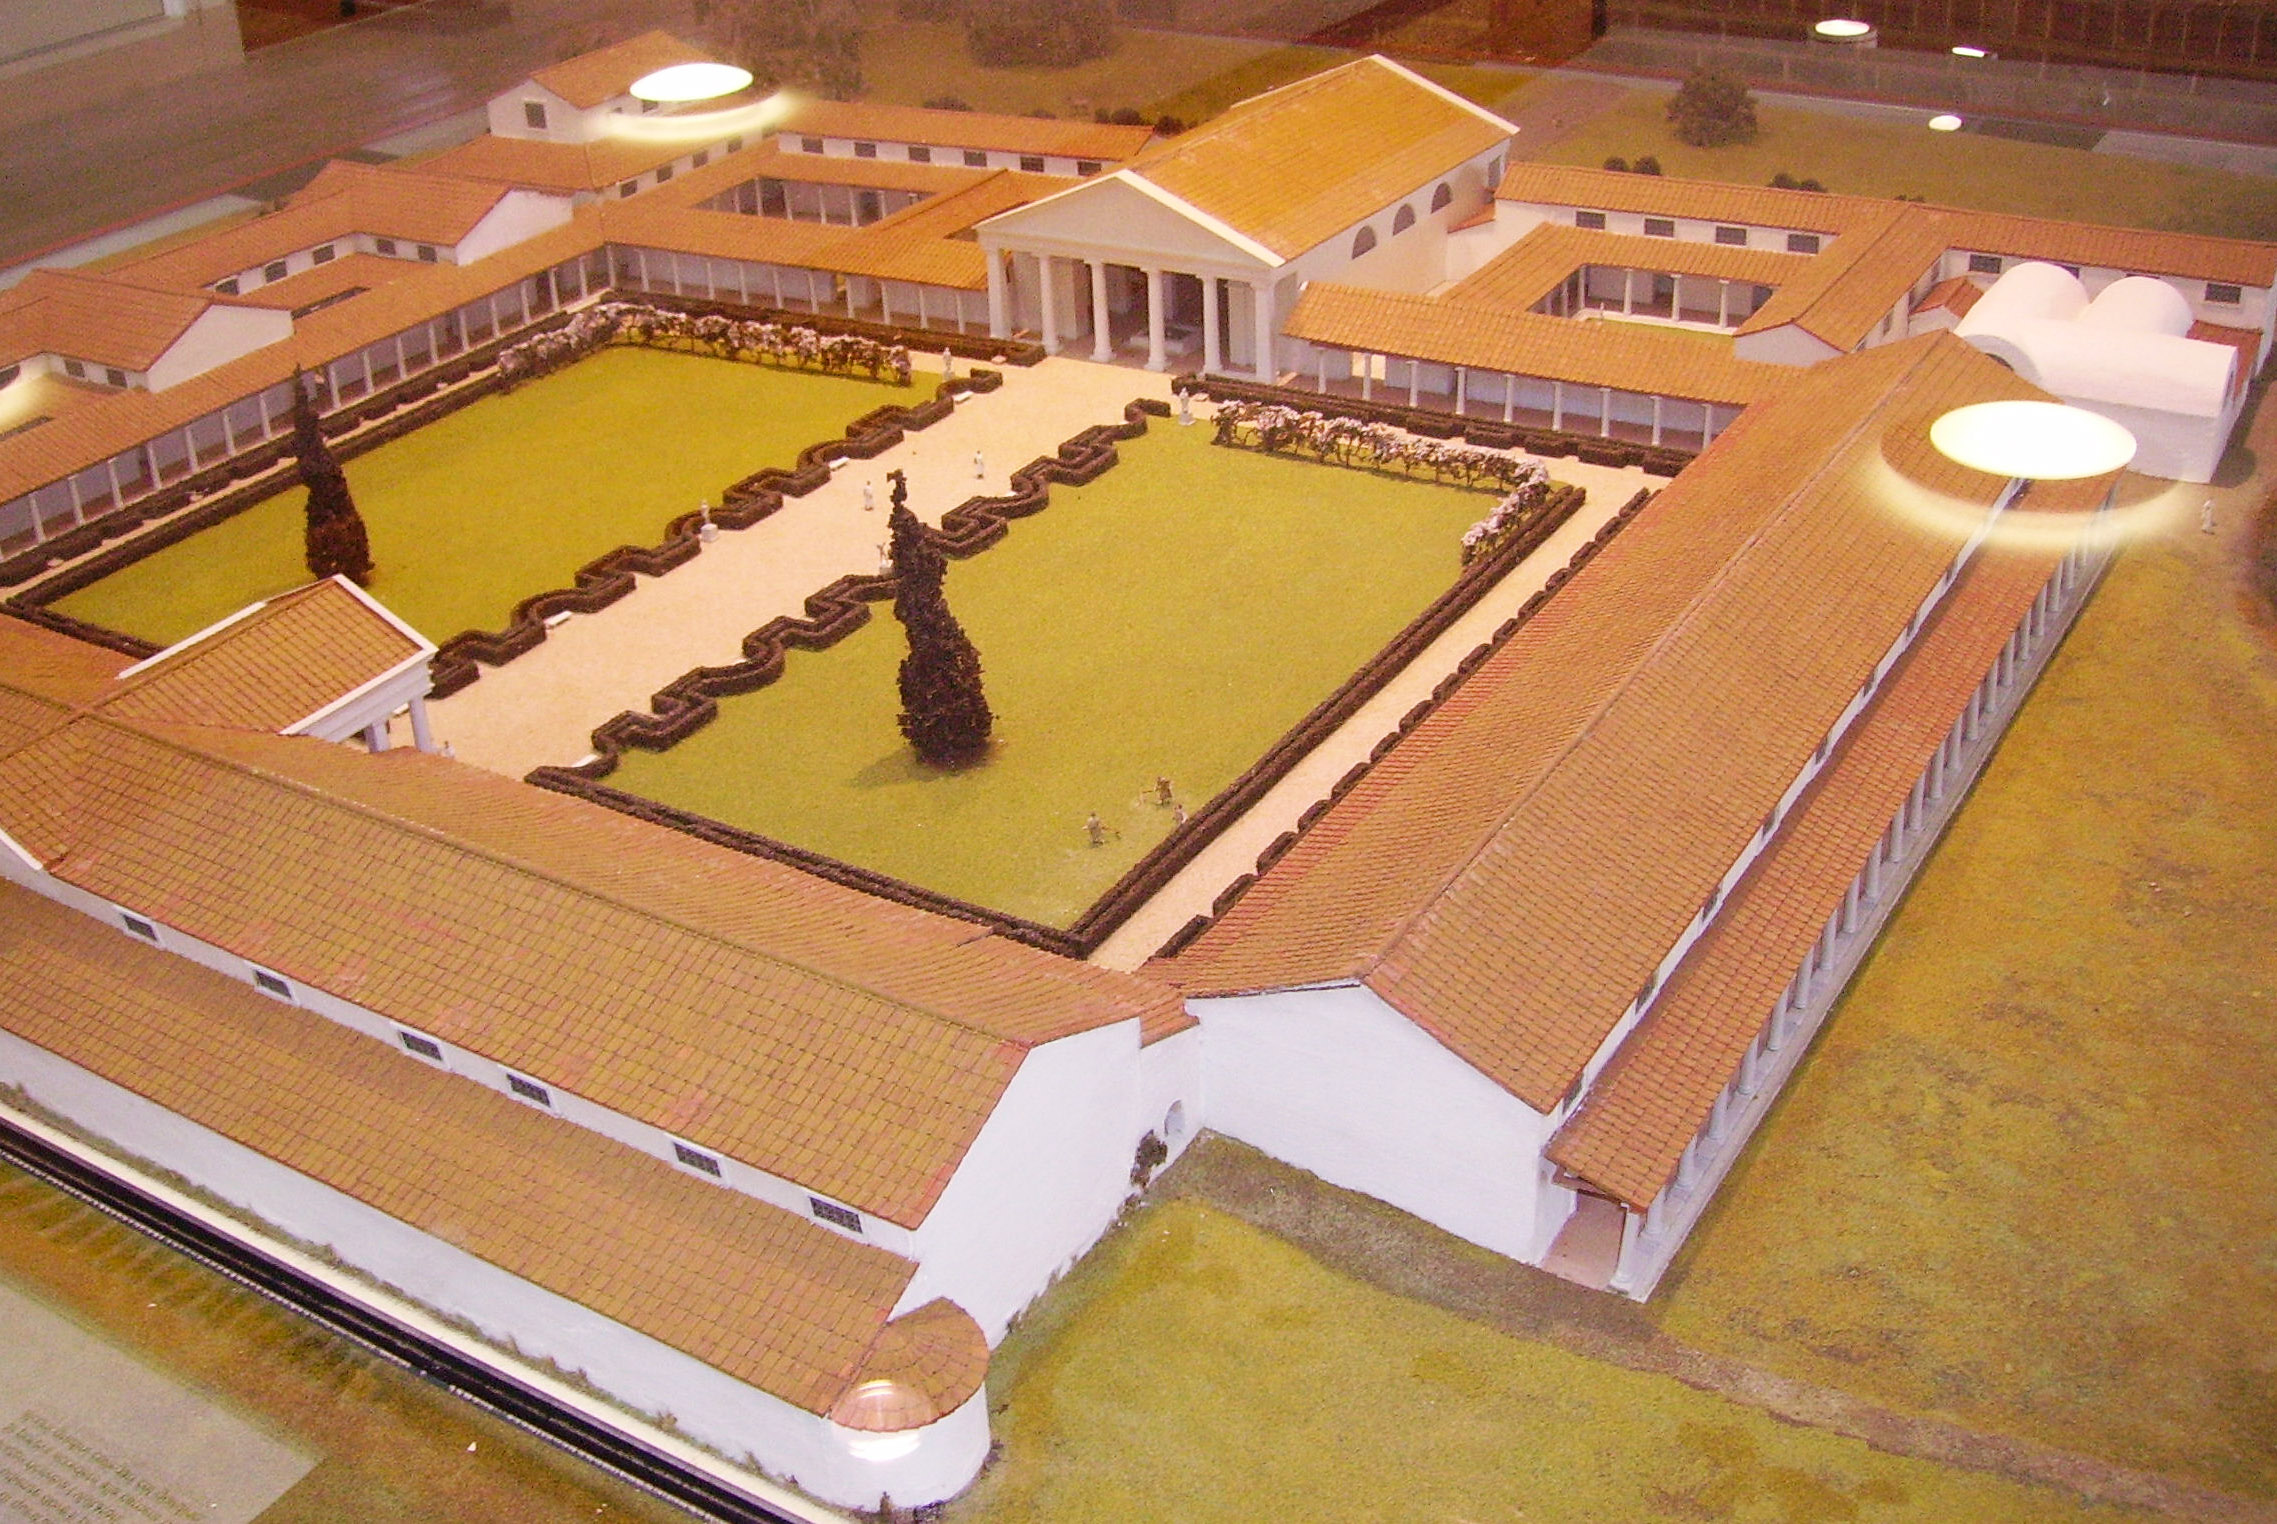 Maquette du Fishbourne Roman Palace. Photo: Immanuel Giel [Public Domain via Wikimedia Commons]